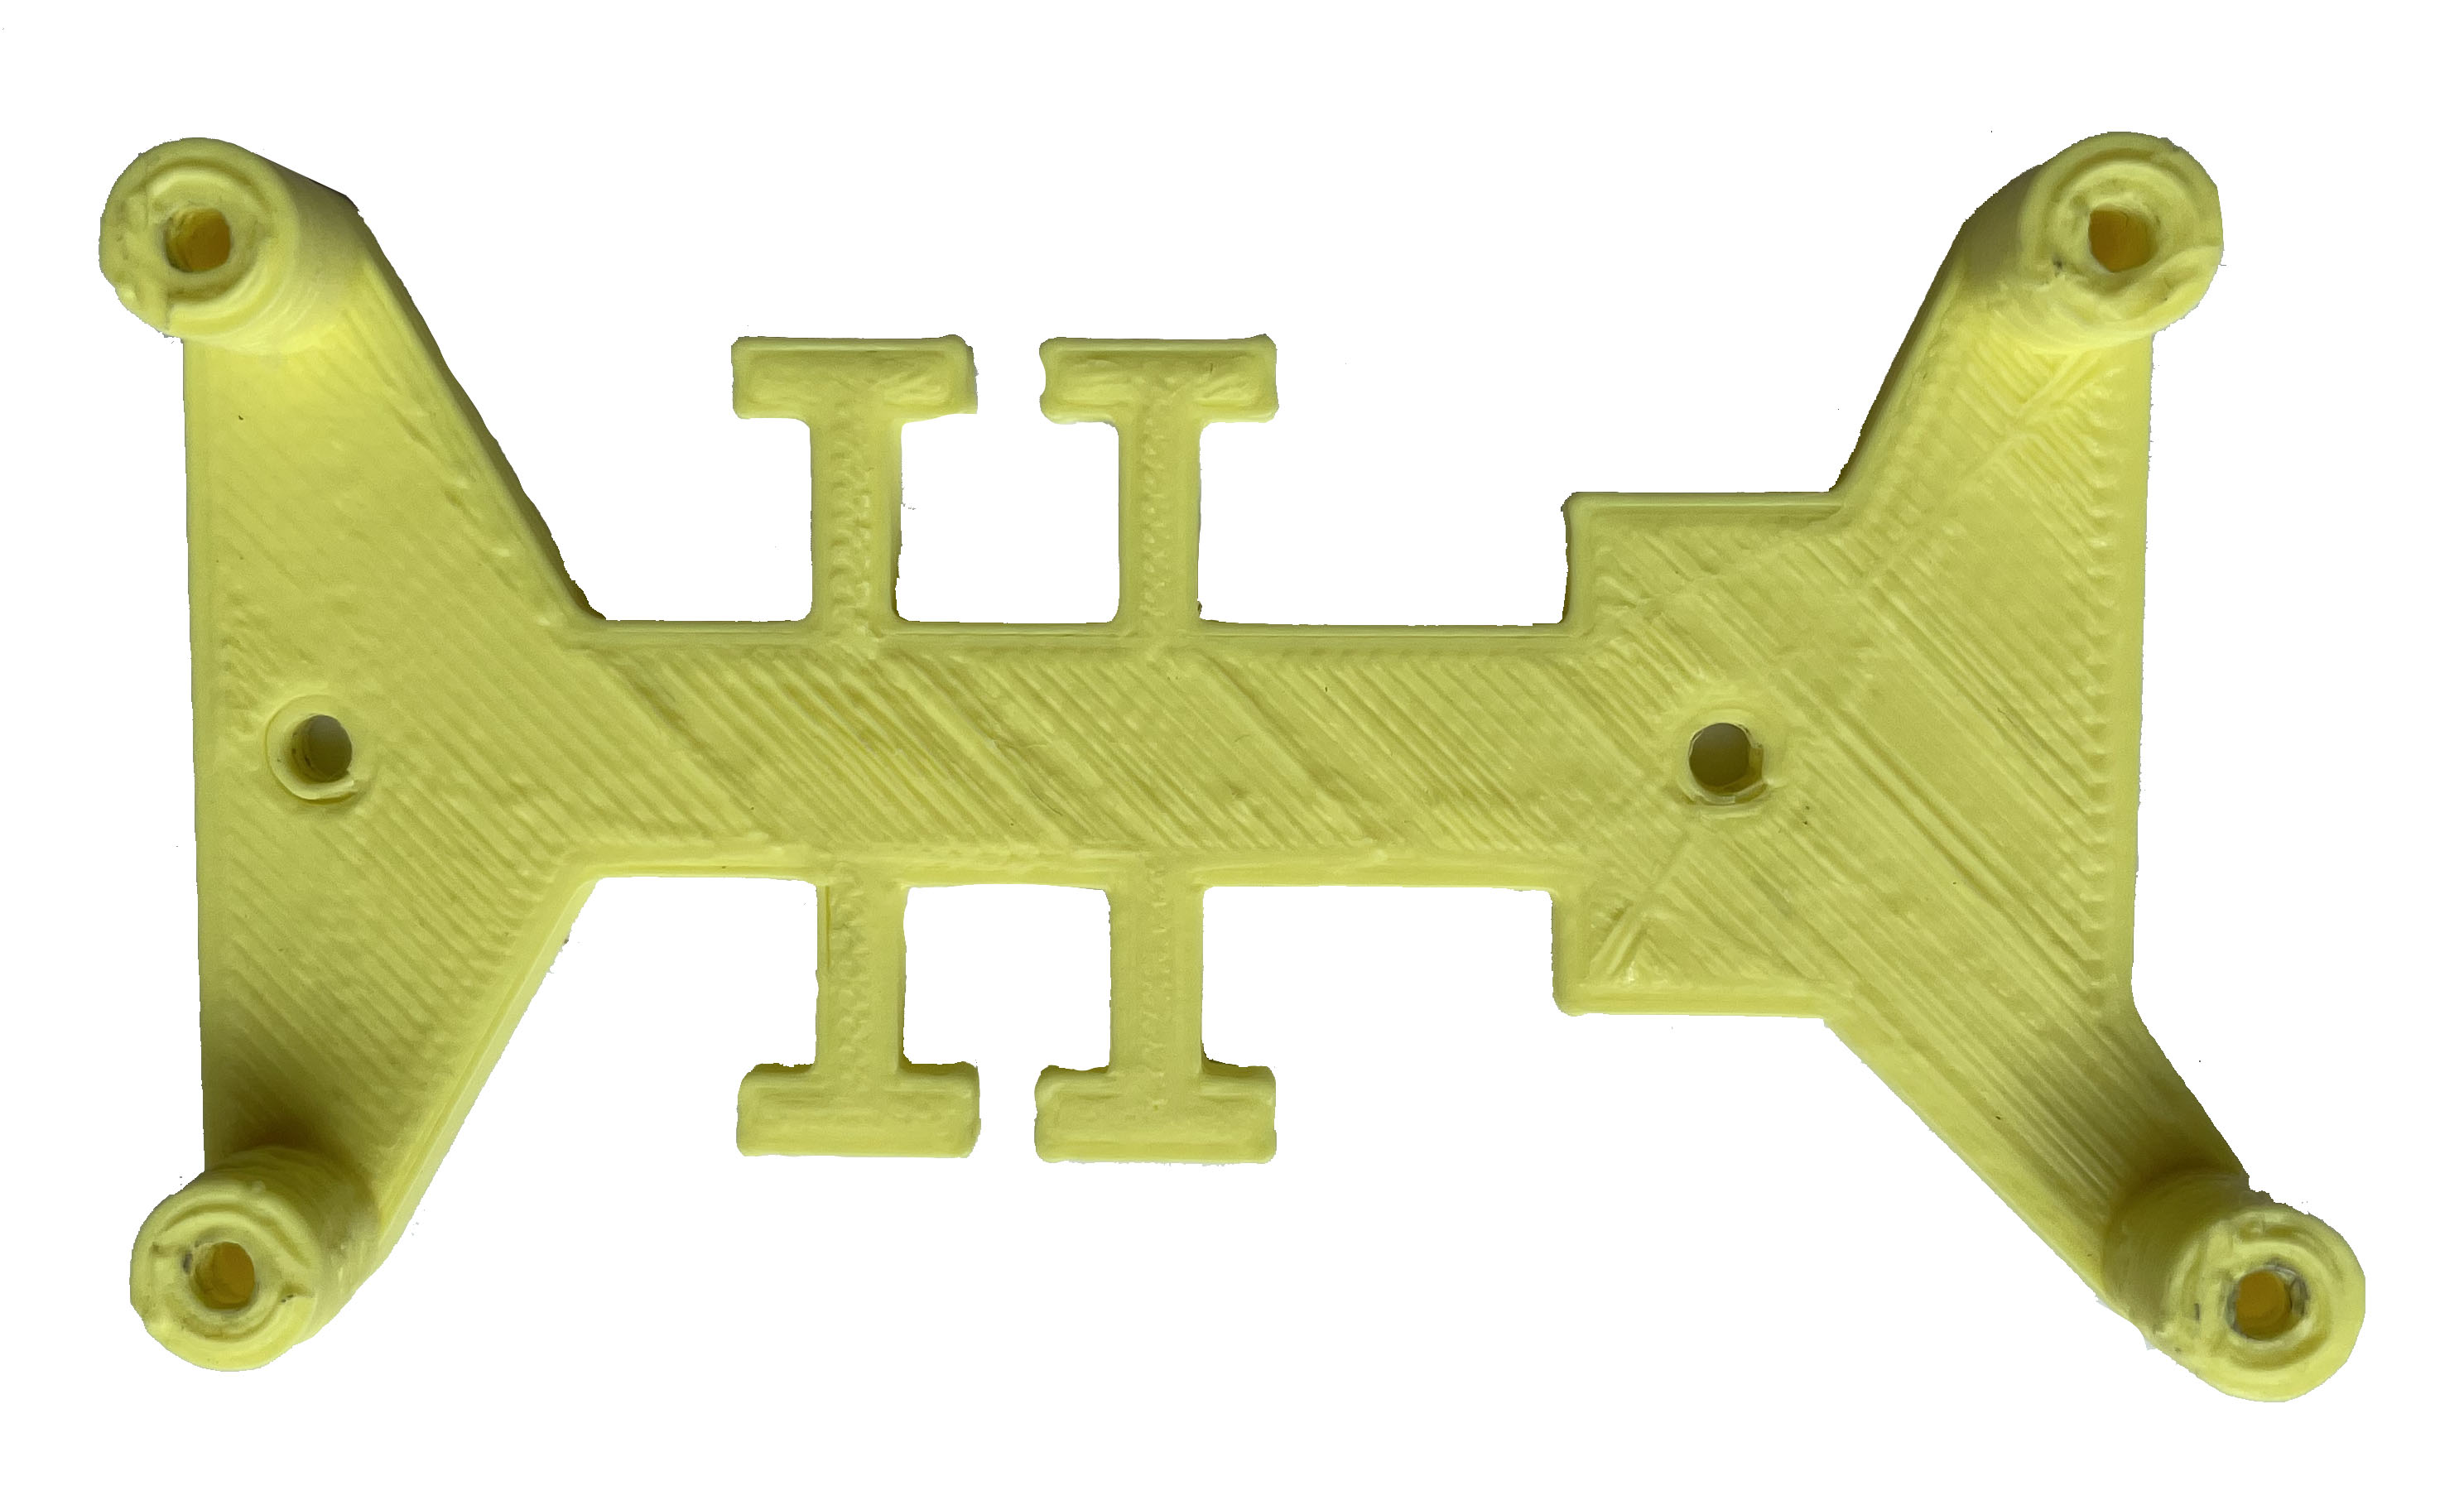 Imagen que muestra un soporte imprimido en 3D para sujetar la placa